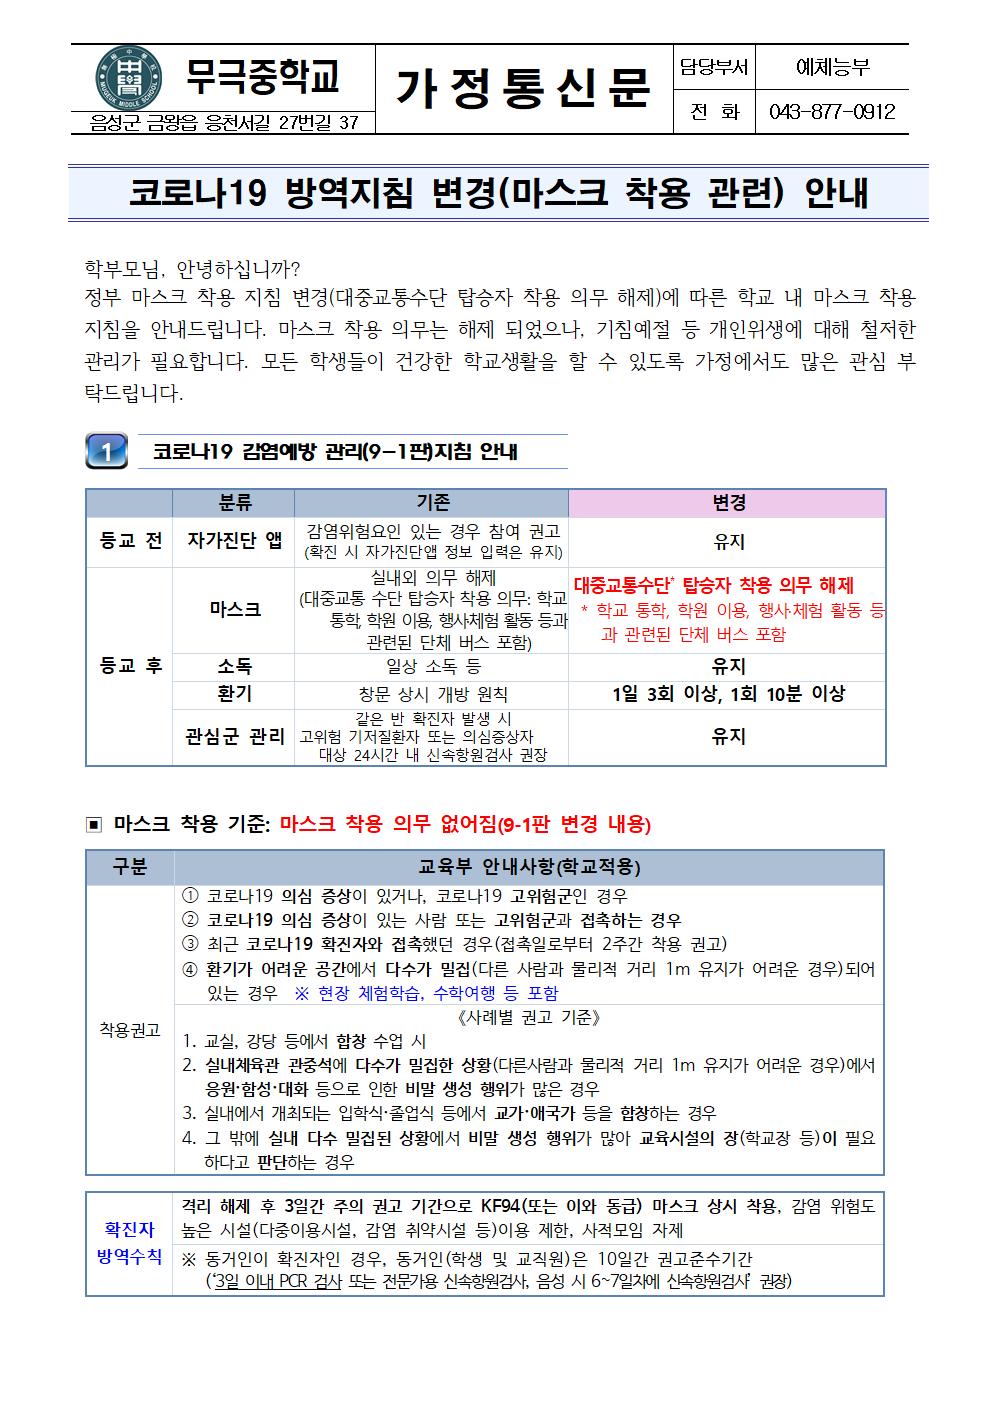 가정통신문_코로나19 방역지침 변경(마스크 착용 관련) 안내001